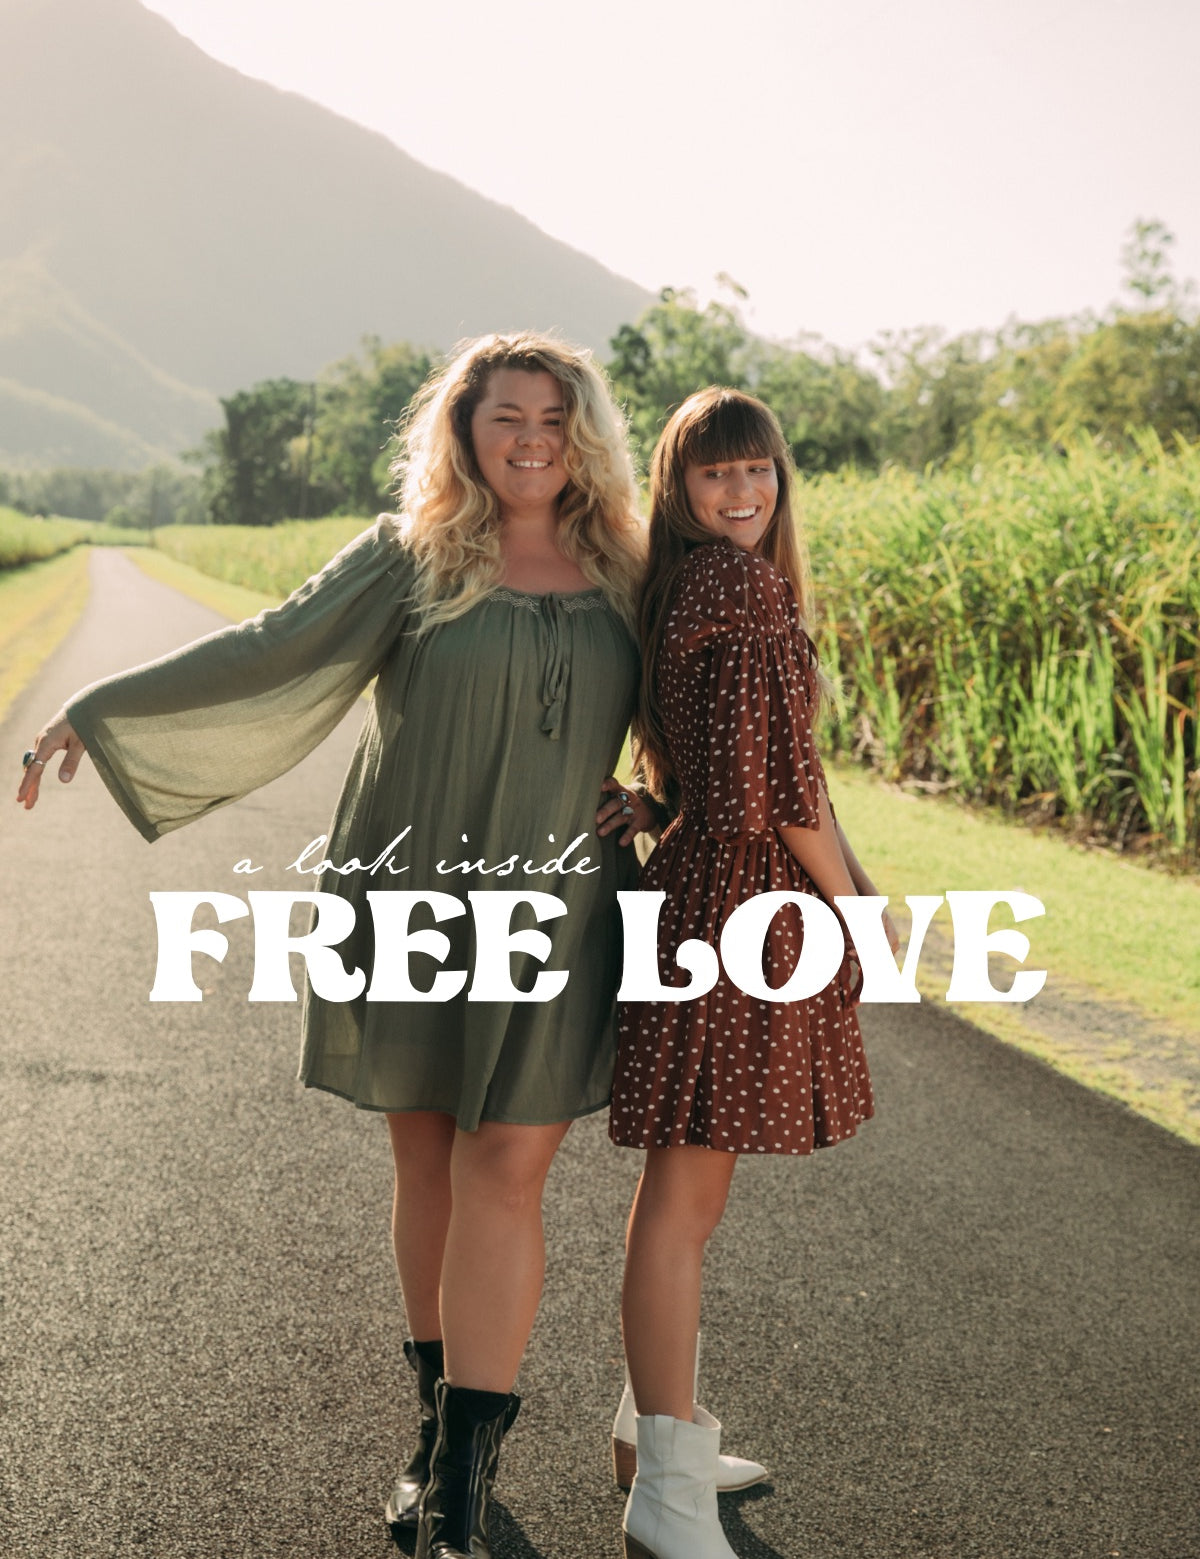 A look inside: Free Love